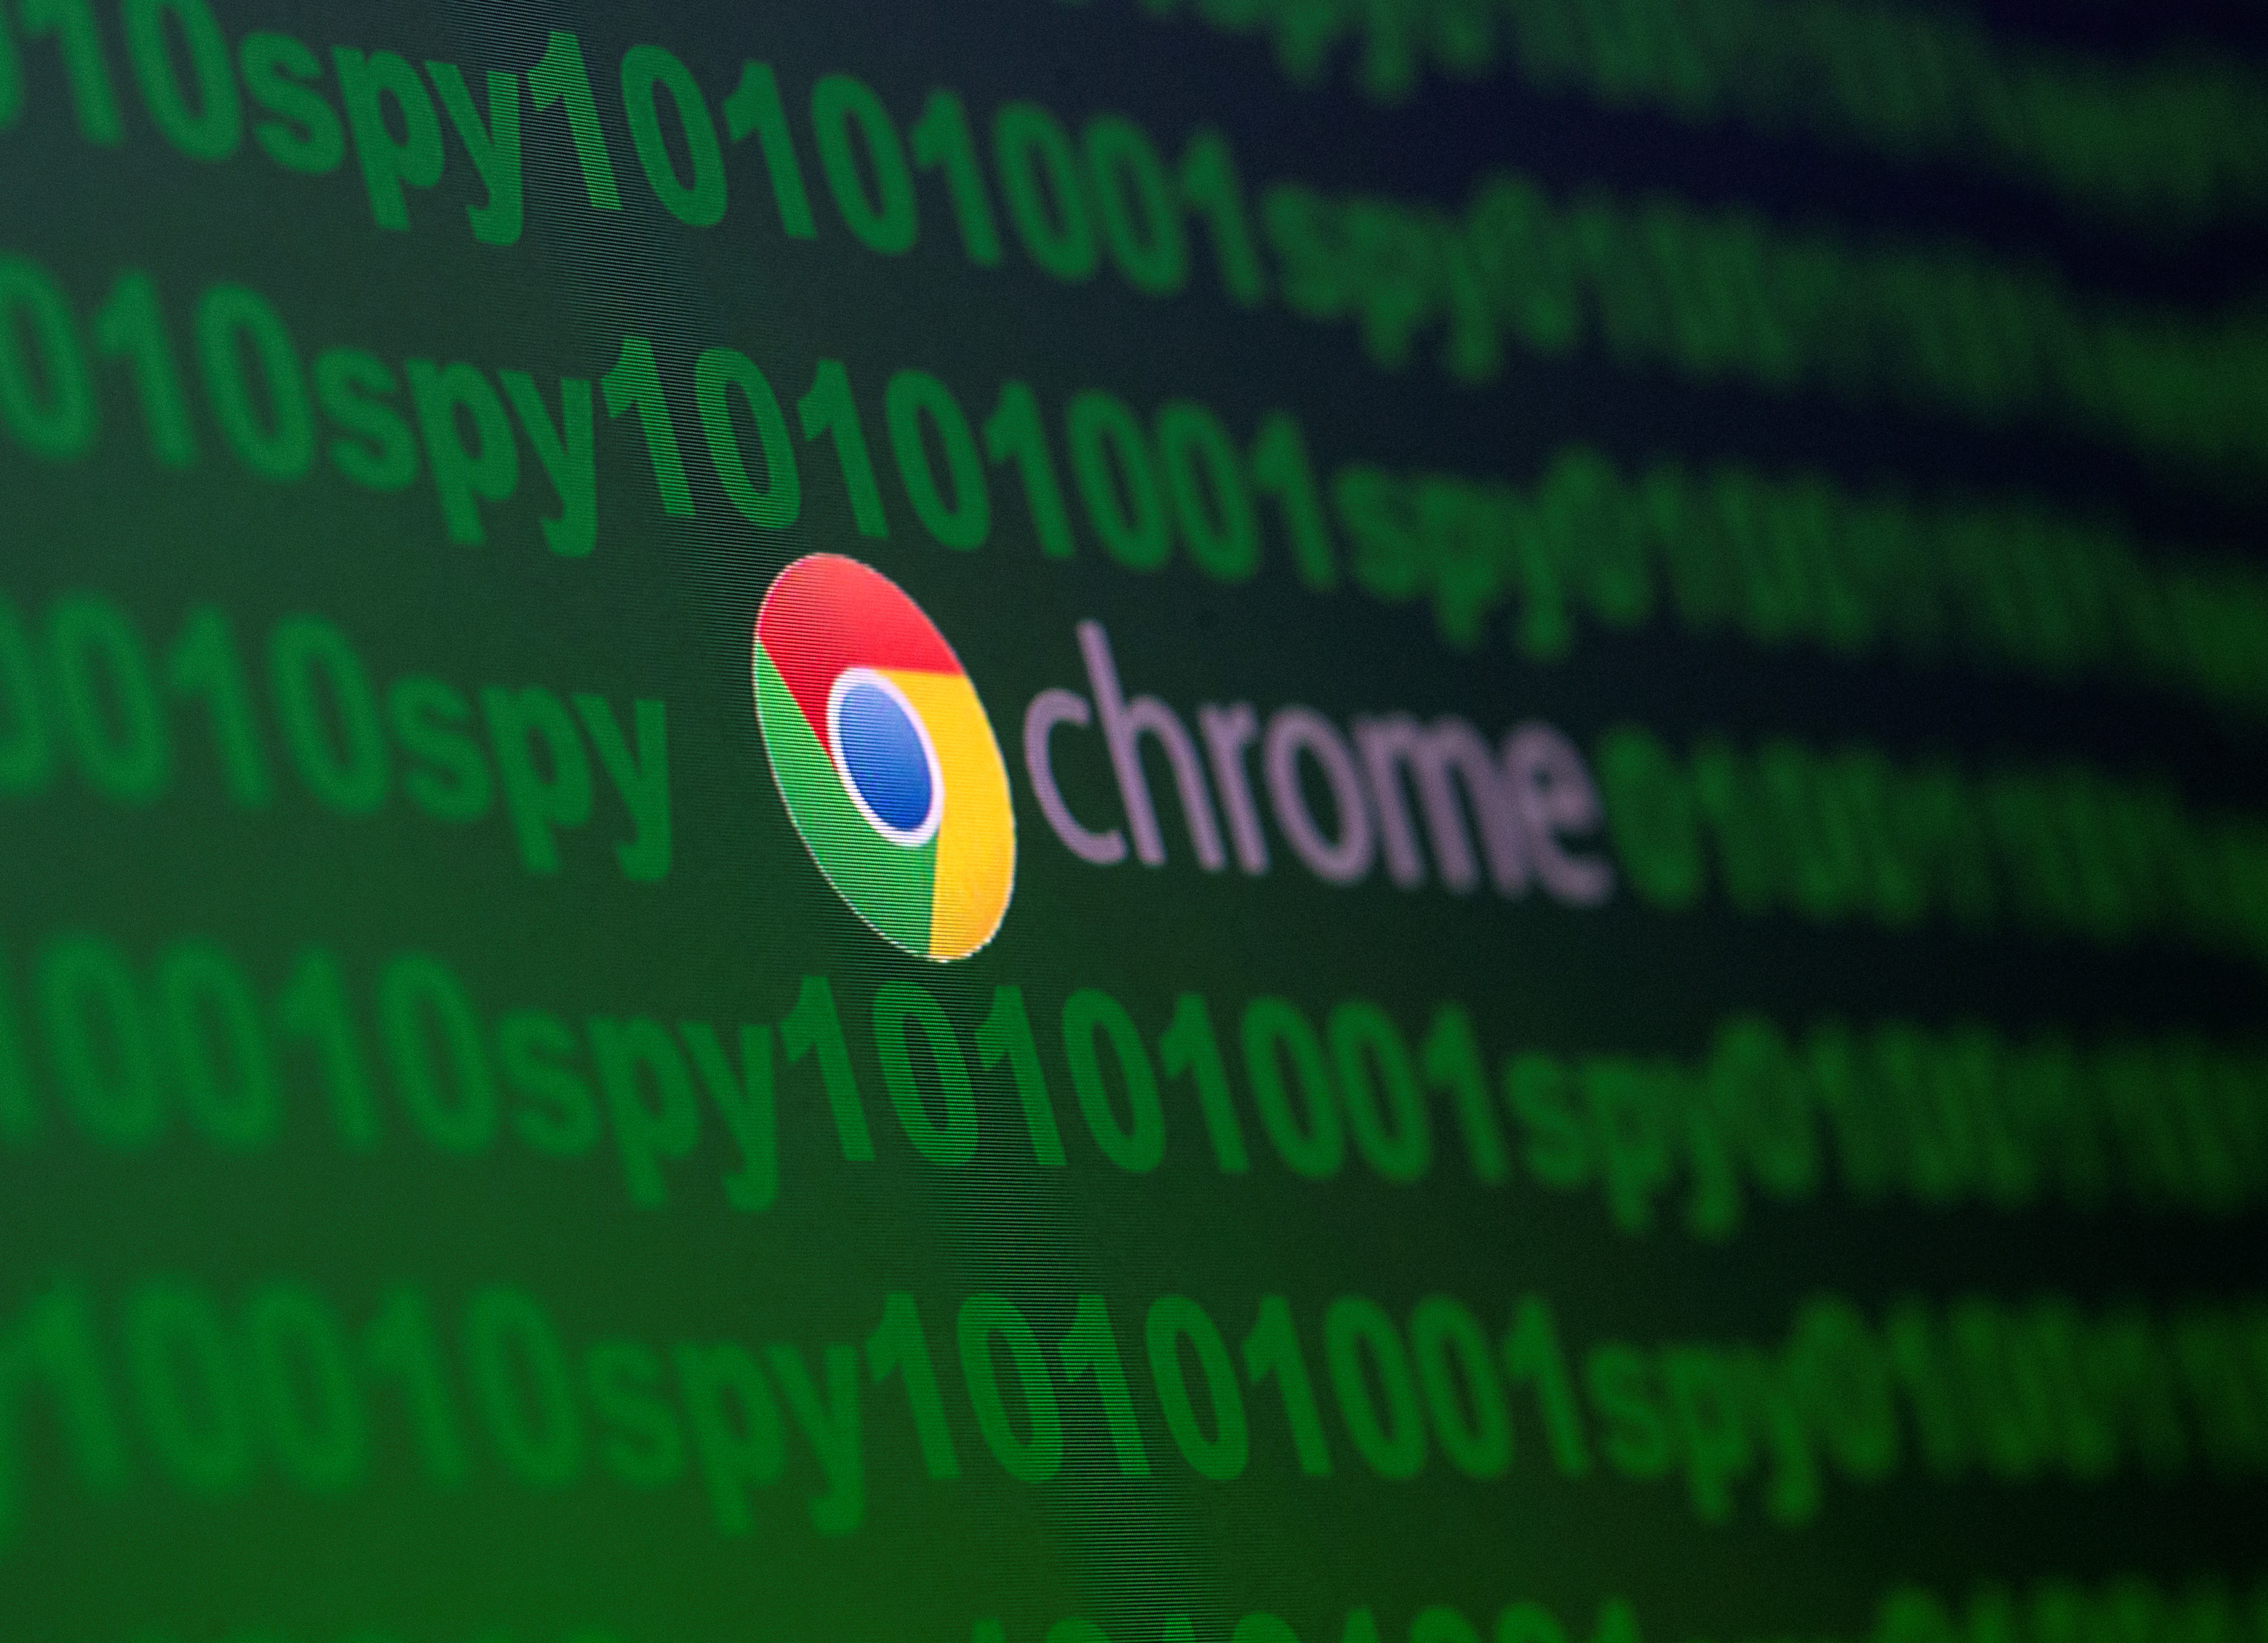 Google Chrome también dejará de dar soporte de seguridad a sus versiones instaladas en dispositivos que usen Windows 7. REUTERS/Dado Ruvic/Illustration